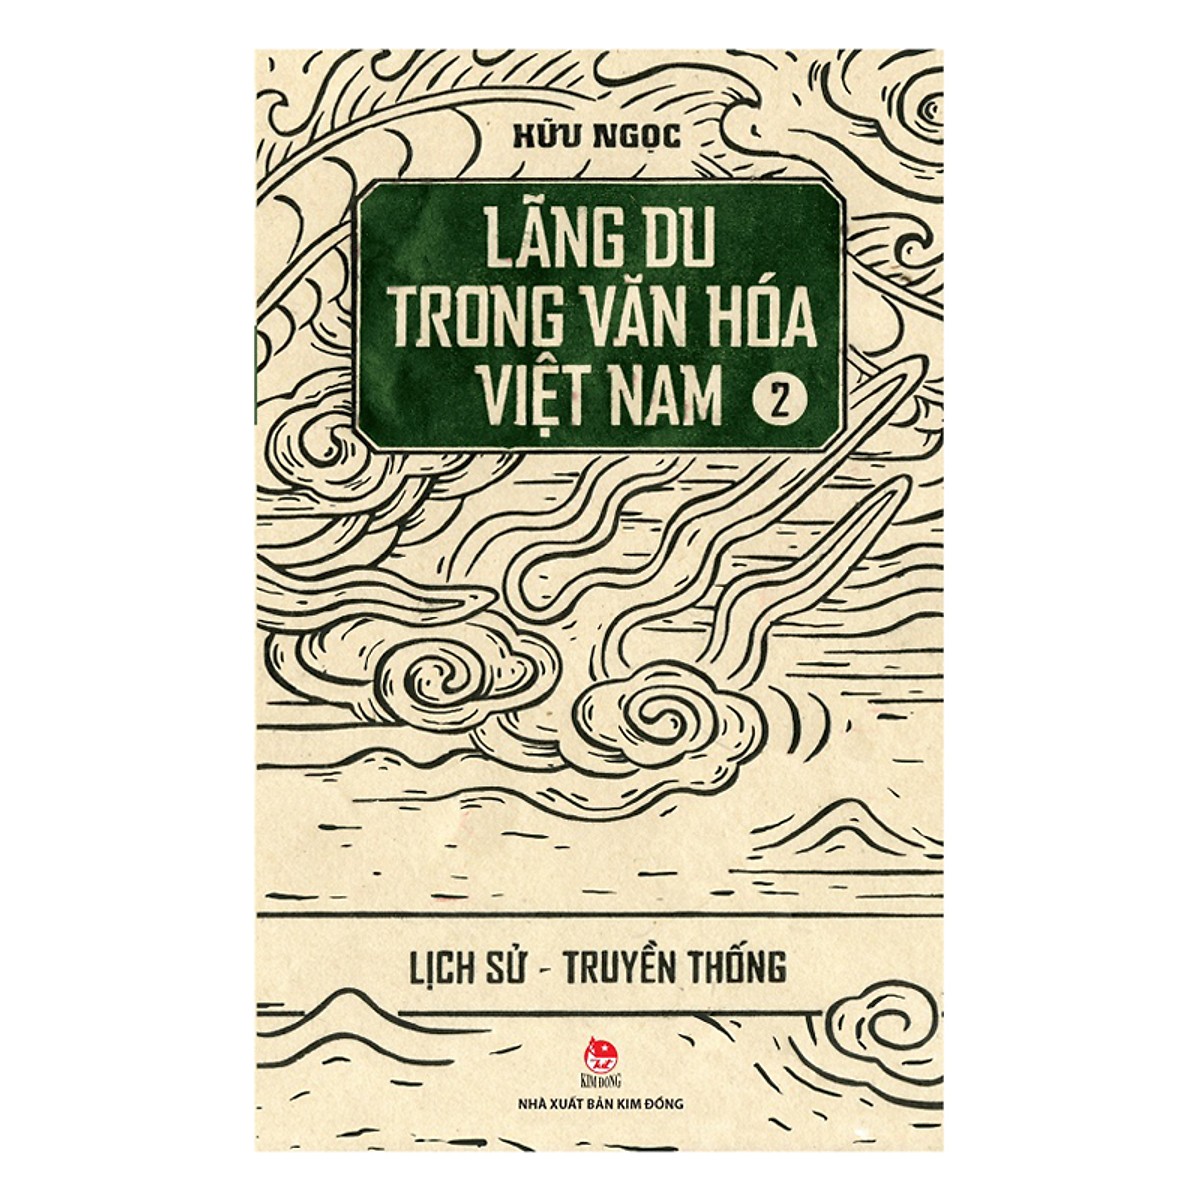 Combo 1 Cuốn sách: Bộ Lãng Du Trong Văn Hóa Việt Nam (03 Cuốn)